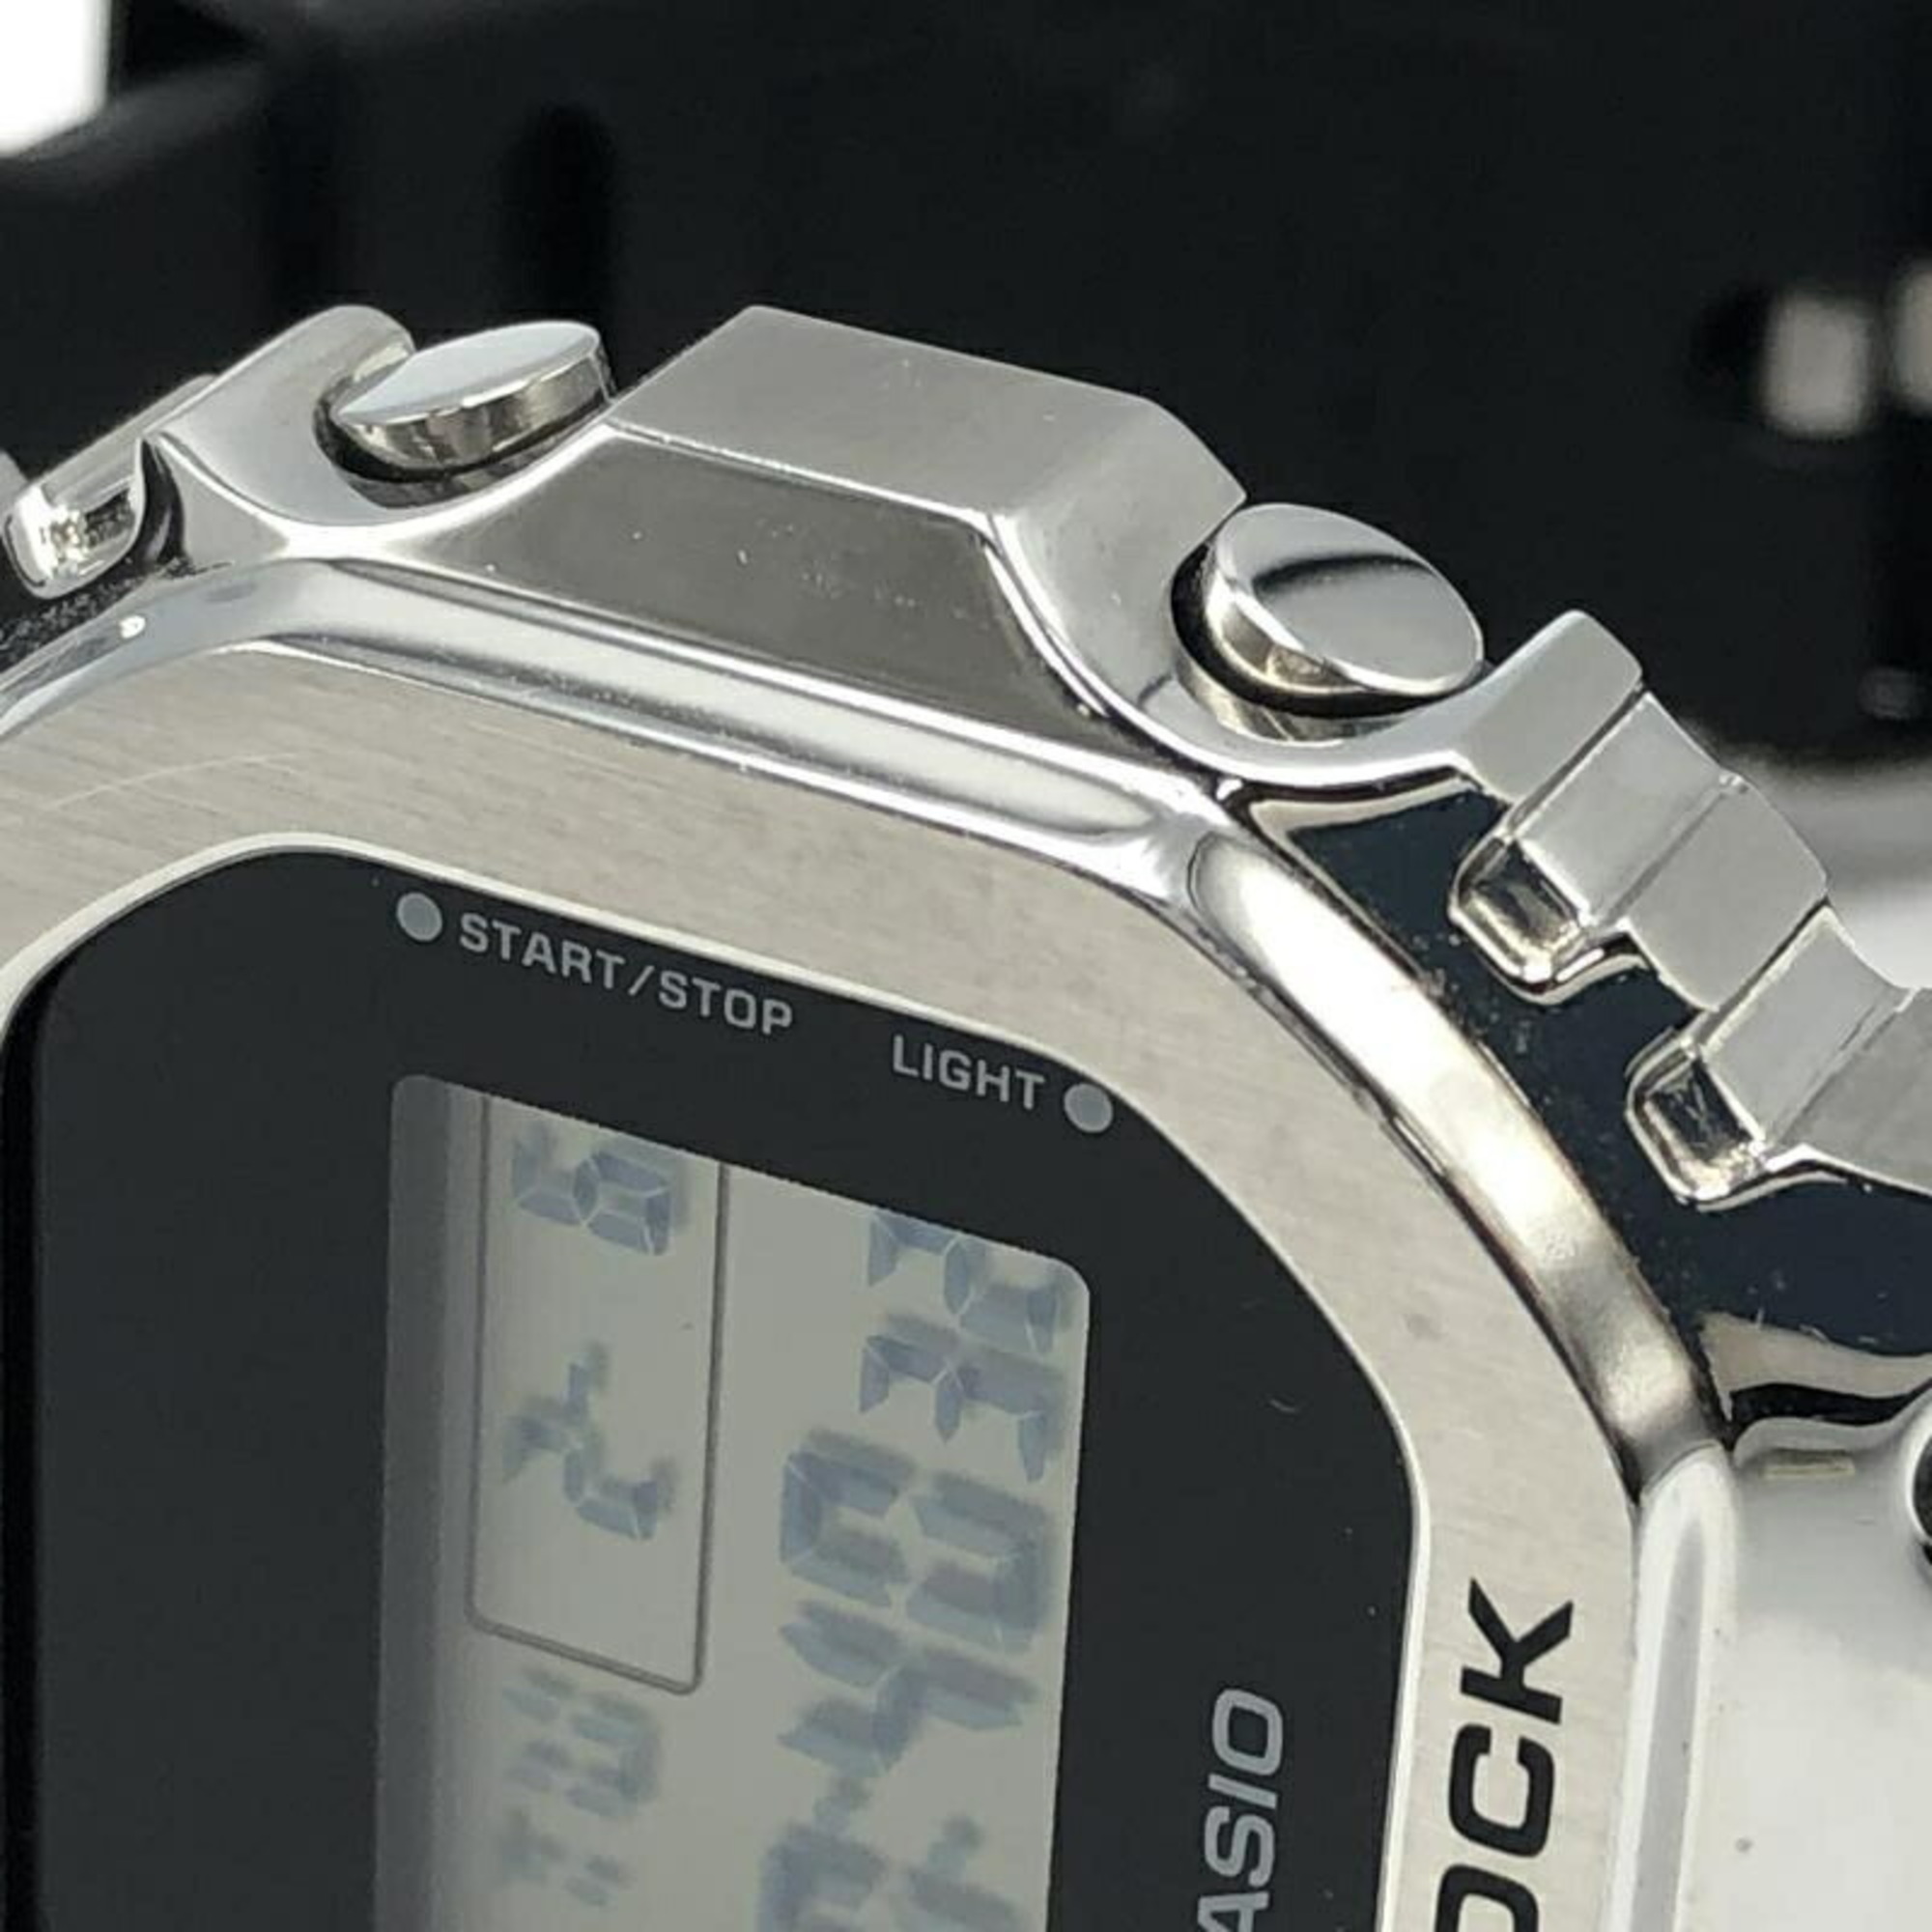 CASIO GM-5600 watch black silver Casio